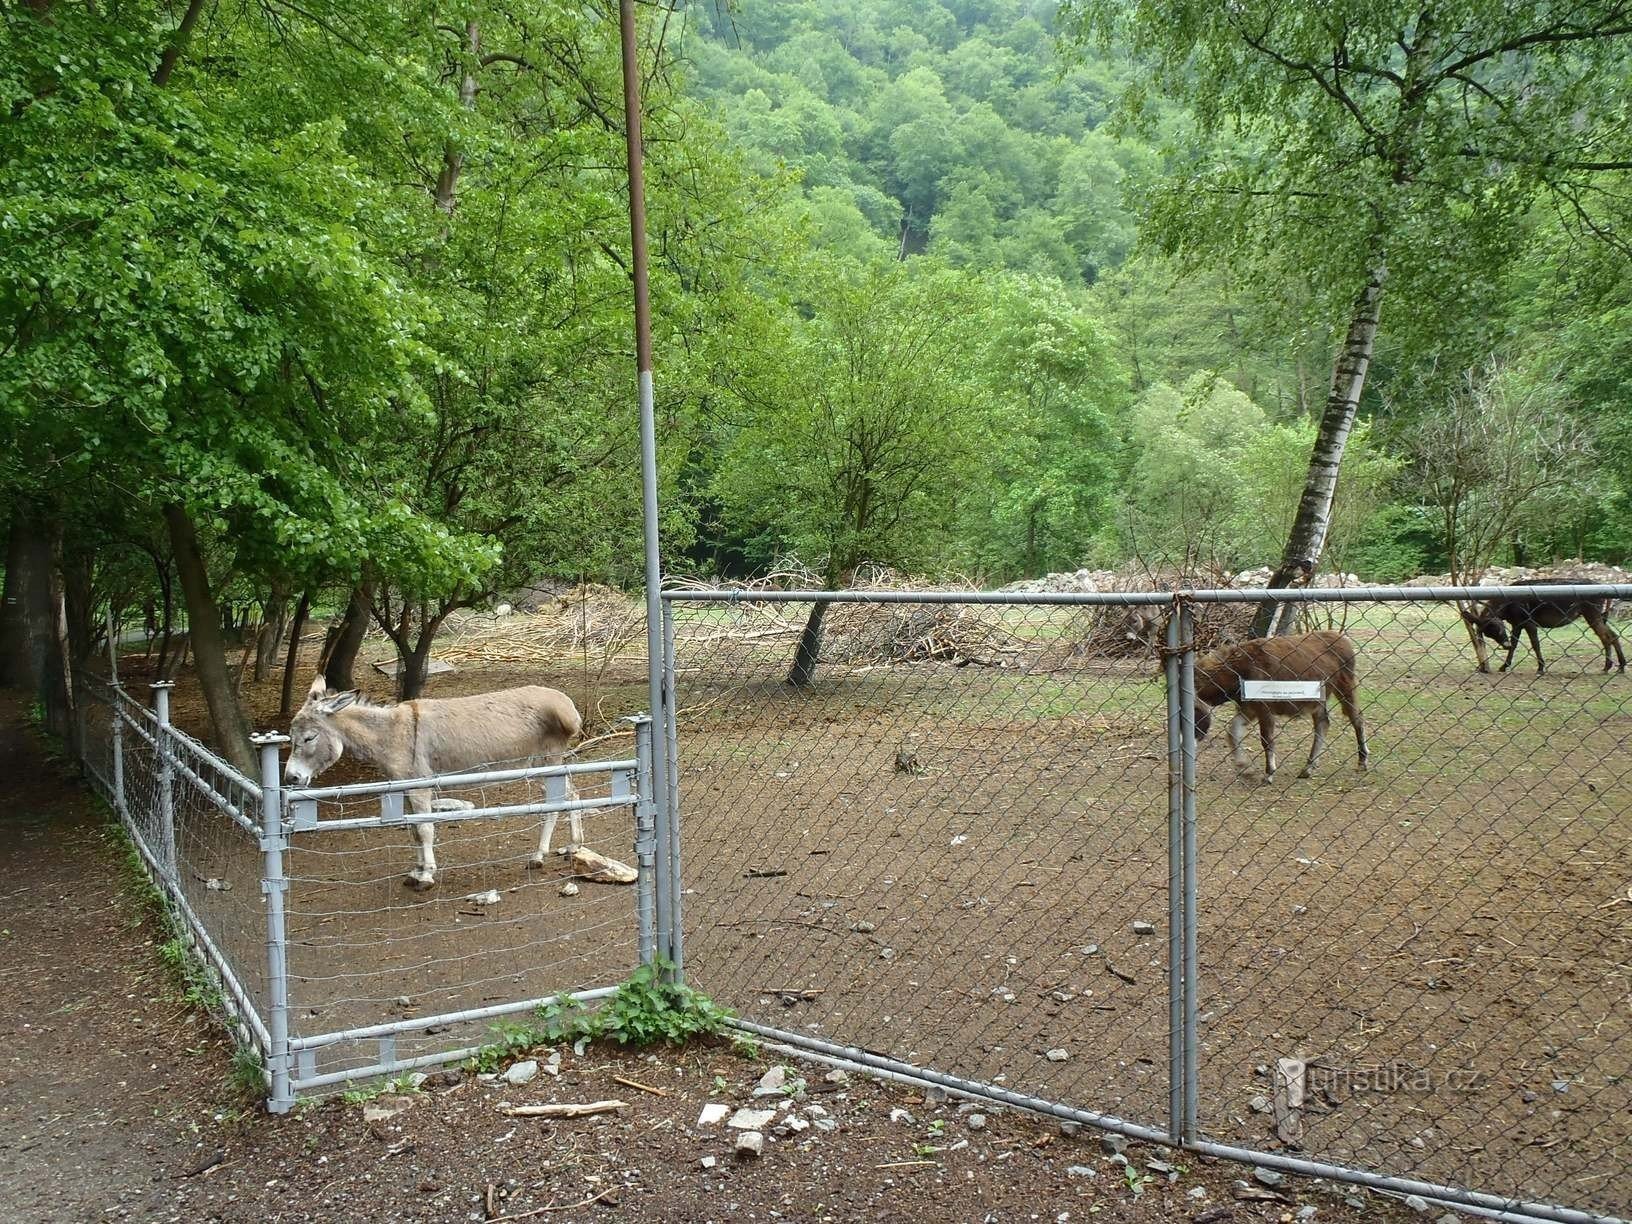 Fazenda de burros - 12.5.2012